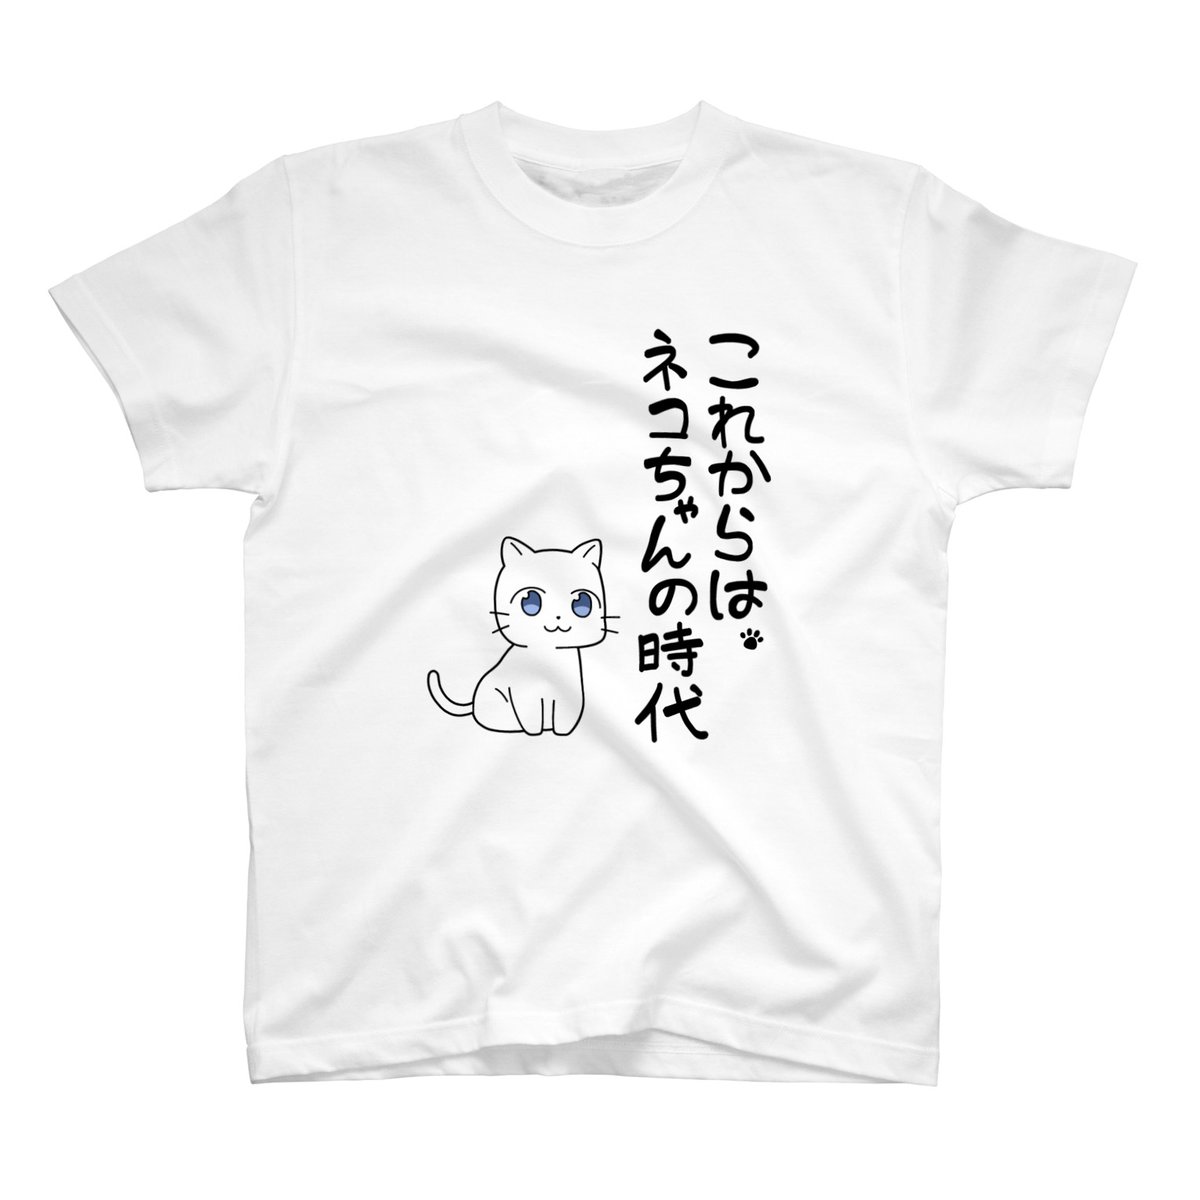 ネコちゃんのTシャツの販売を開始しました!
とっても可愛いです。

■ リンクはこちら
https://t.co/4vHEOmfChY 